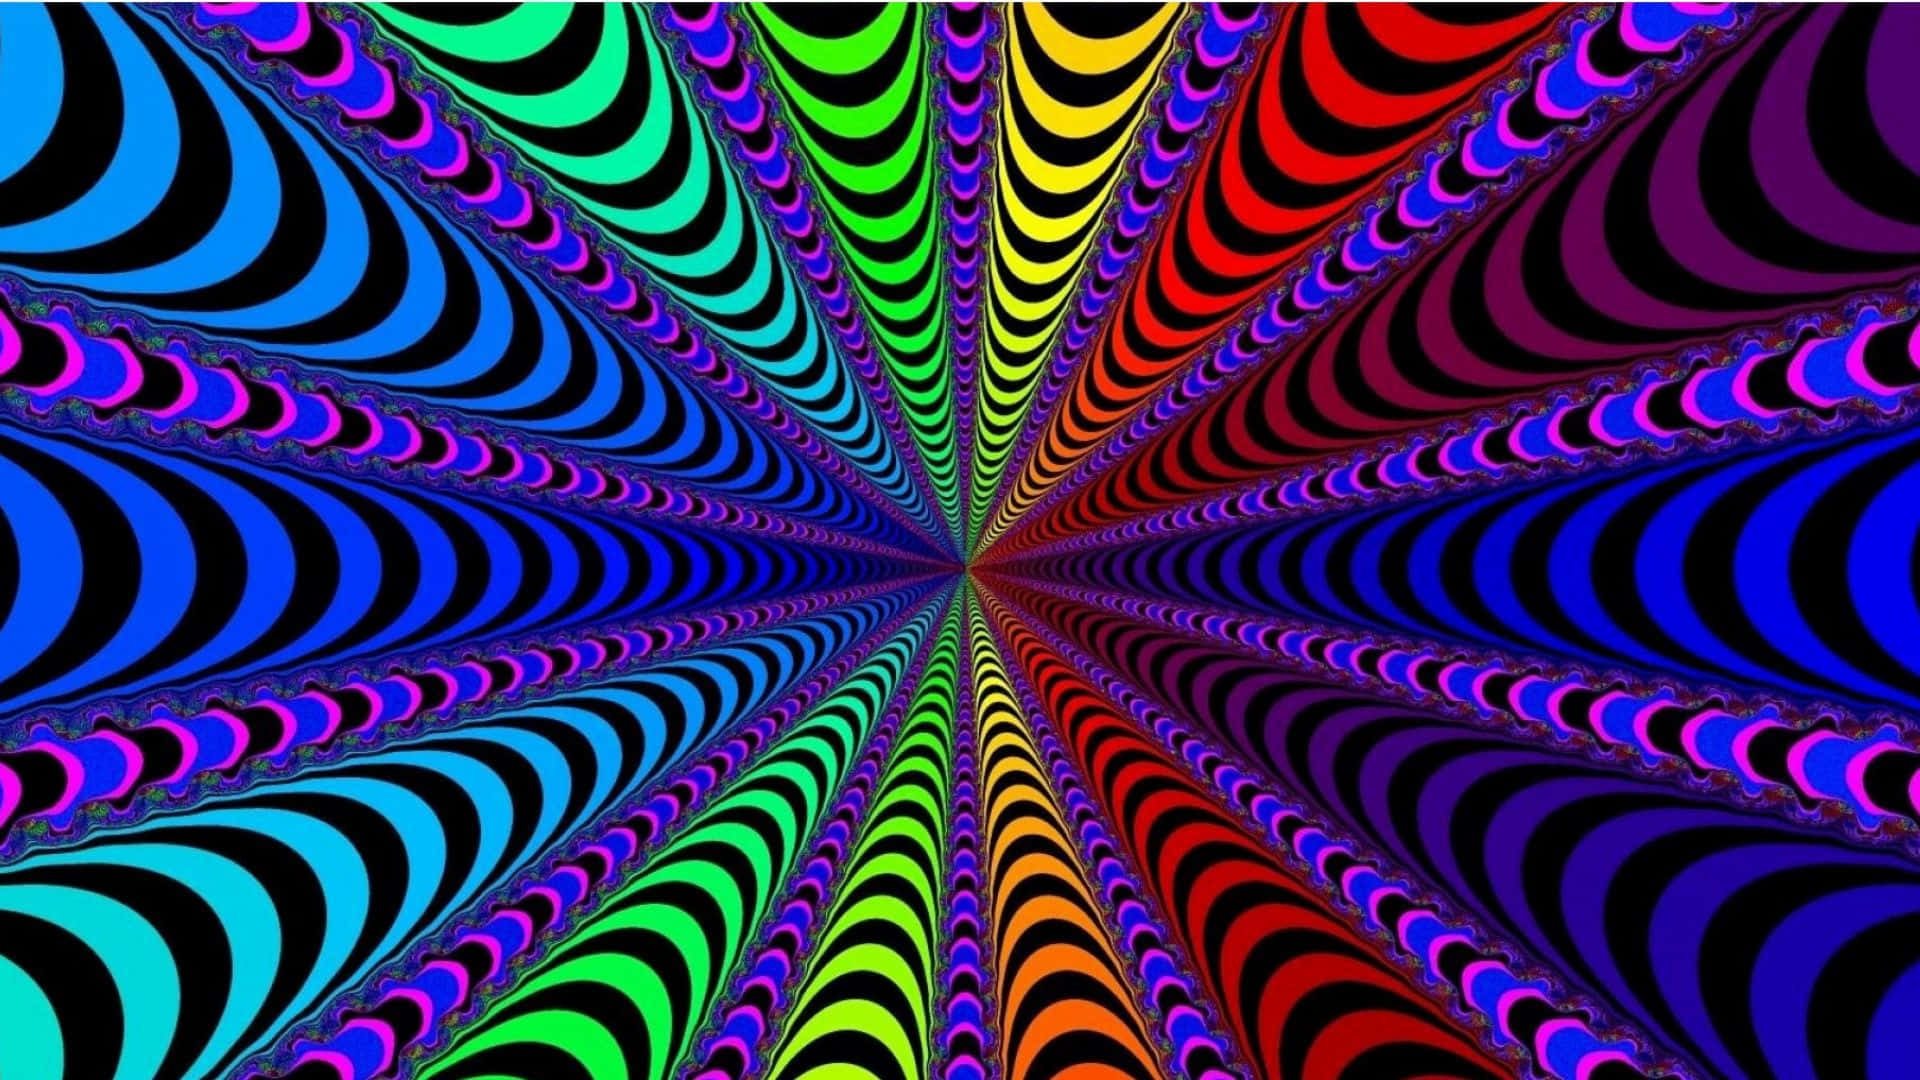 Fascinantepapel Tapiz De Ilusiones Ópticas En Espiral Fondo de pantalla